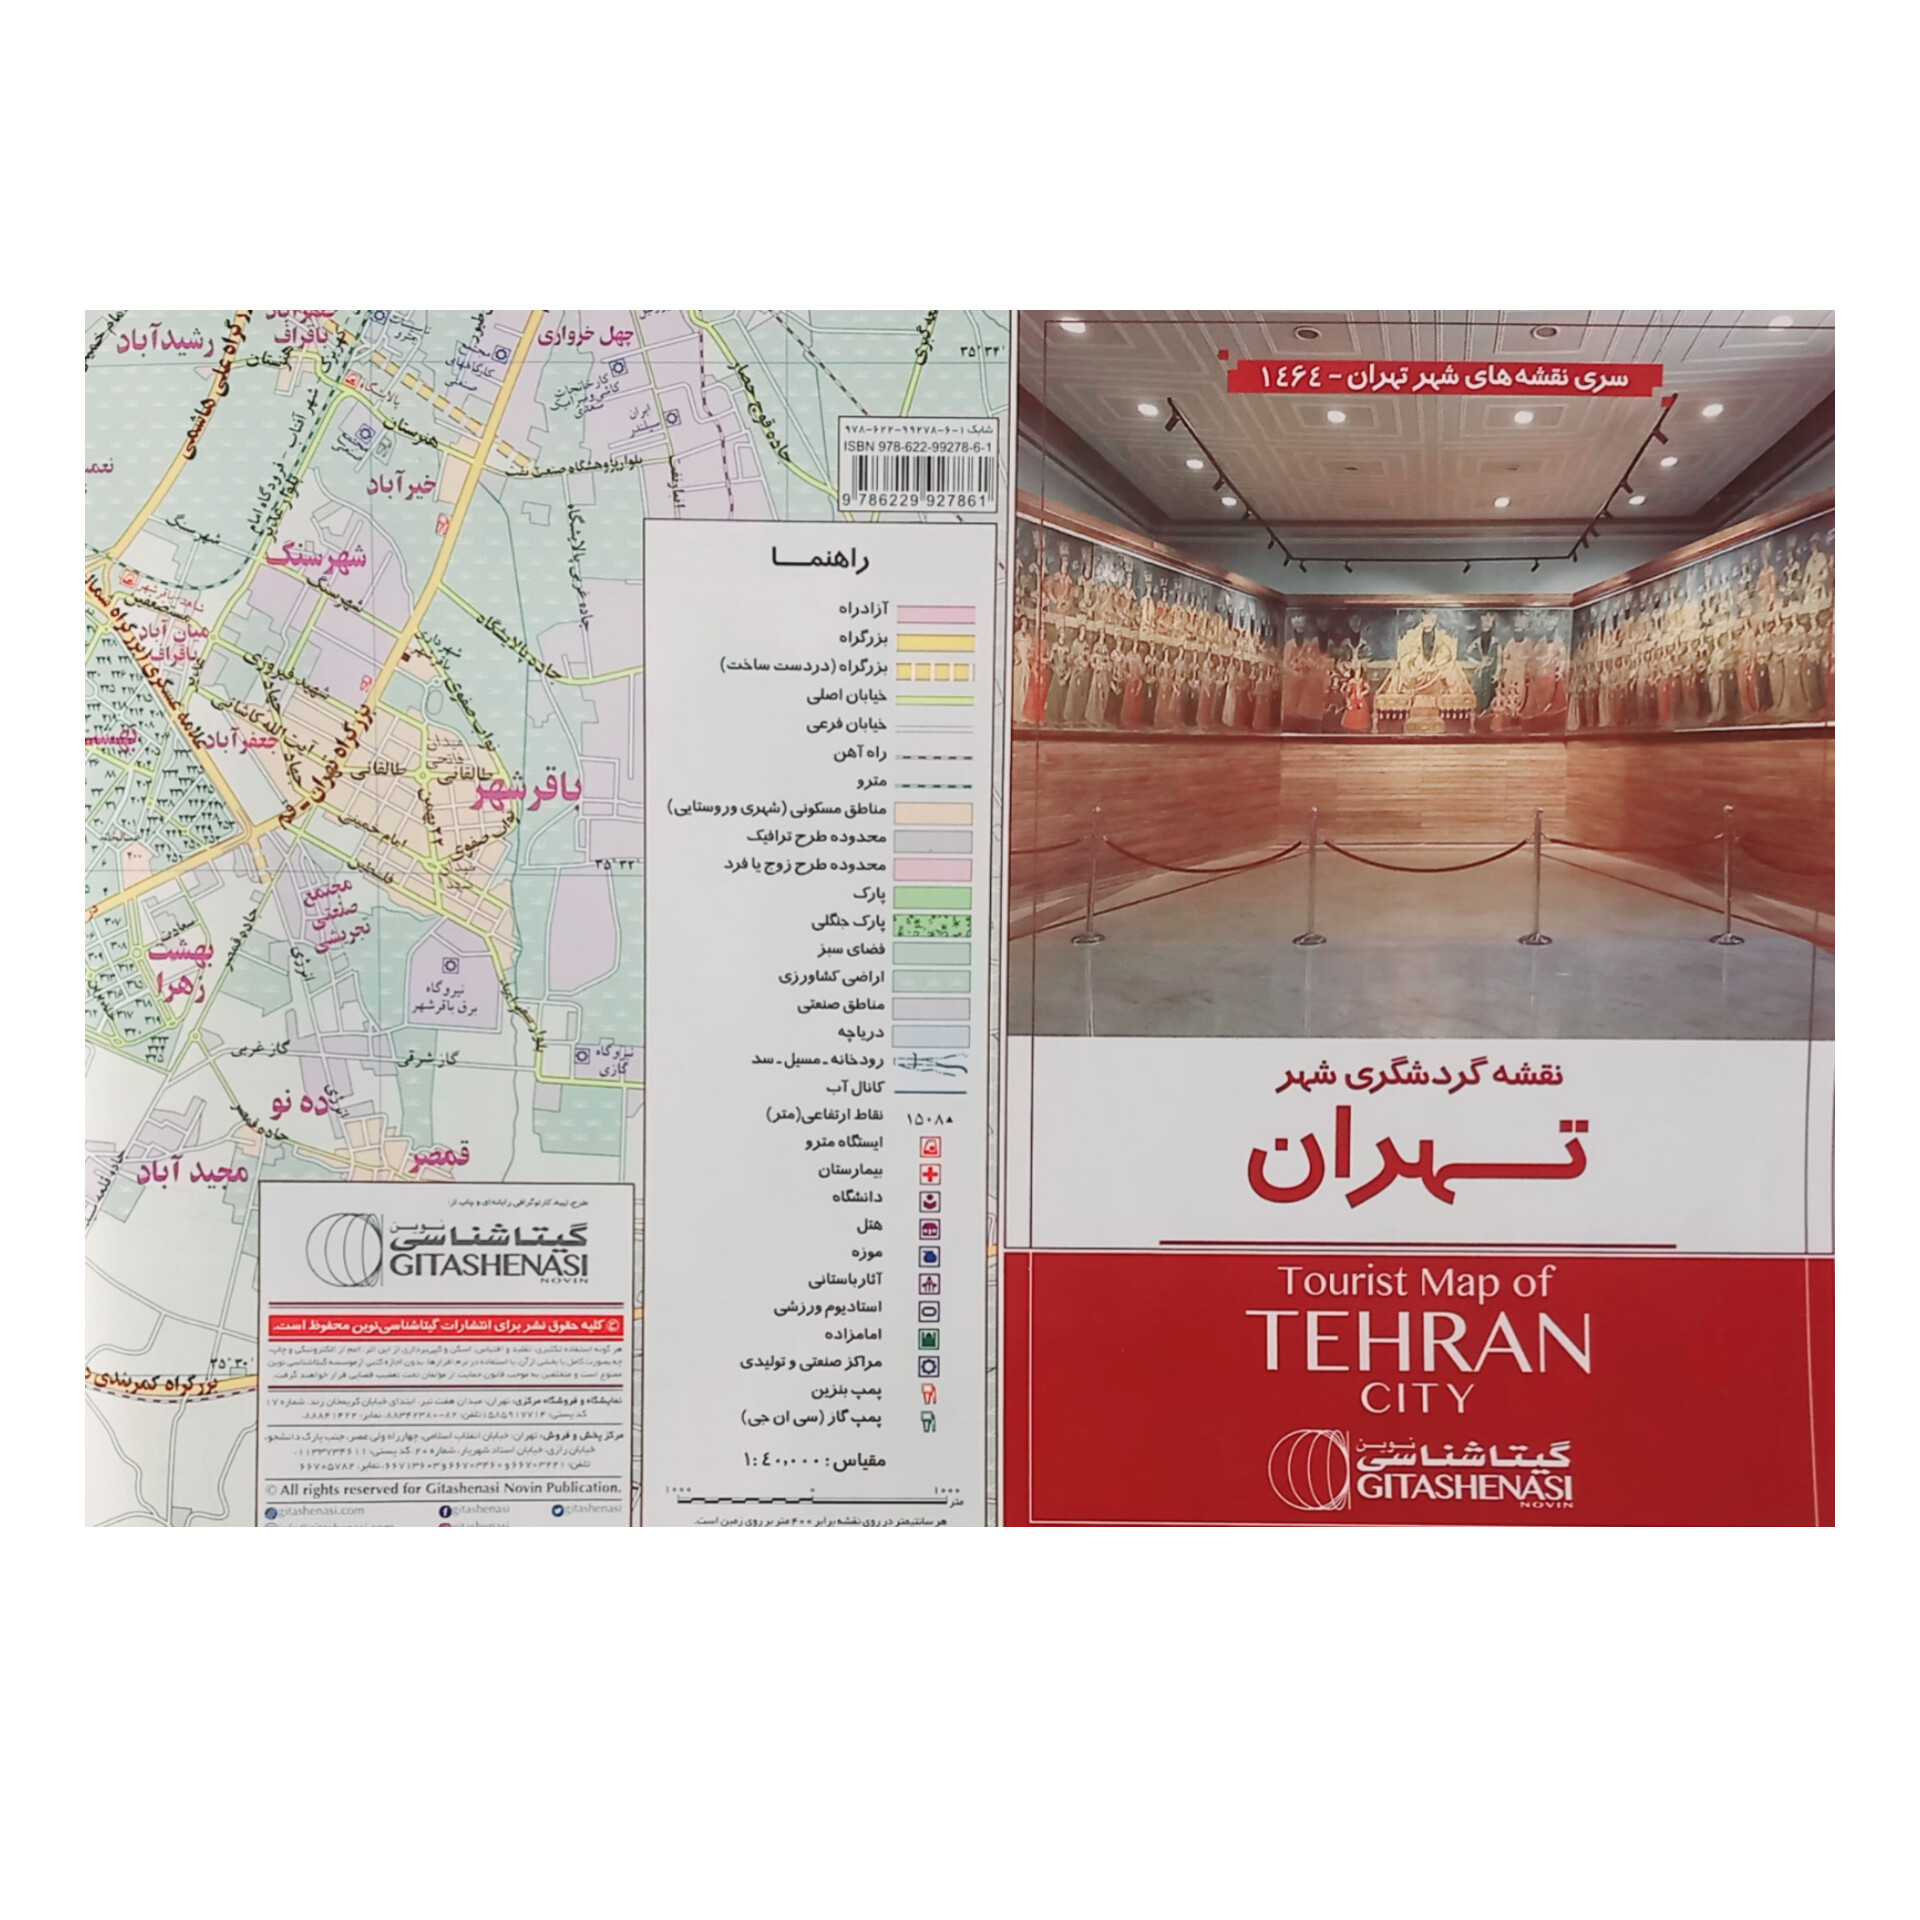 نقشه انتشارات گیتاشناسی نوین طرح گردشگری شهر تهران کد 1464